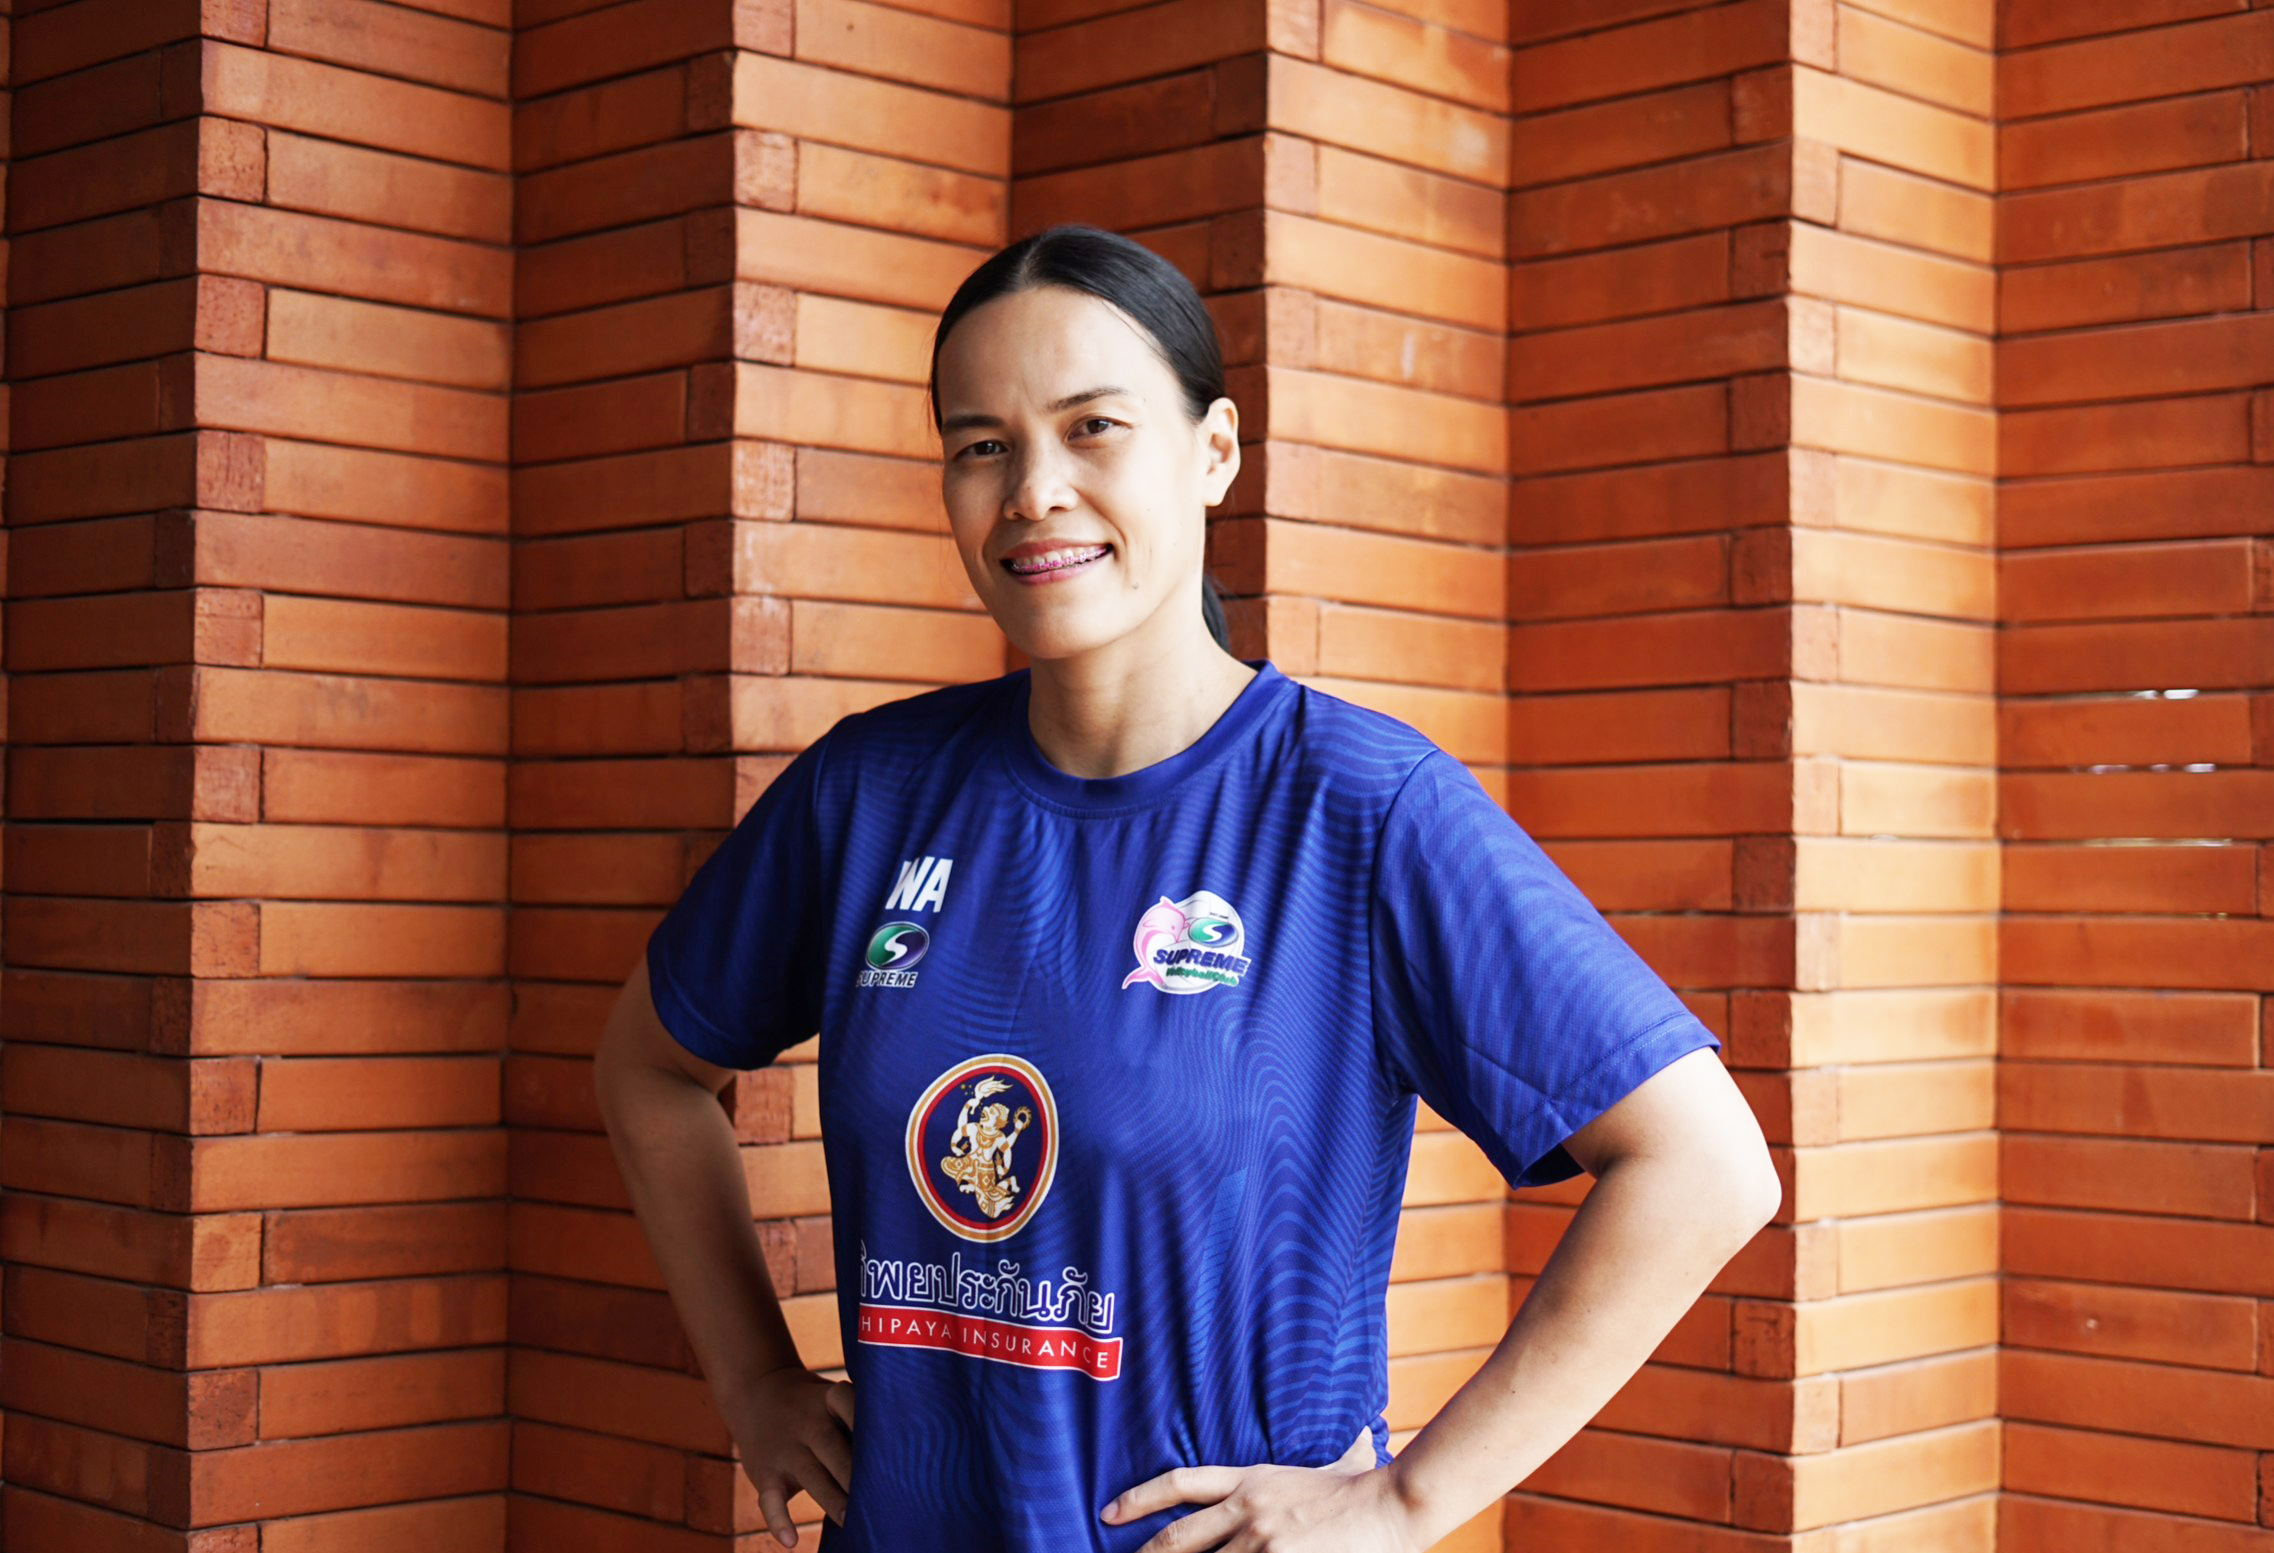 กัปตันกิ๊ฟ วิลาวัณย์ ตำนานนักตบลูกยางทีมชาติไทย เตรียมต่อยอดนำความสำเร็จบนเส้นทางนักกีฬาวอลเลย์บอล ถ่ายทอดสู่เยาวชนในโครงการ “ทิพย วอลเลย์บอล คลินิก”